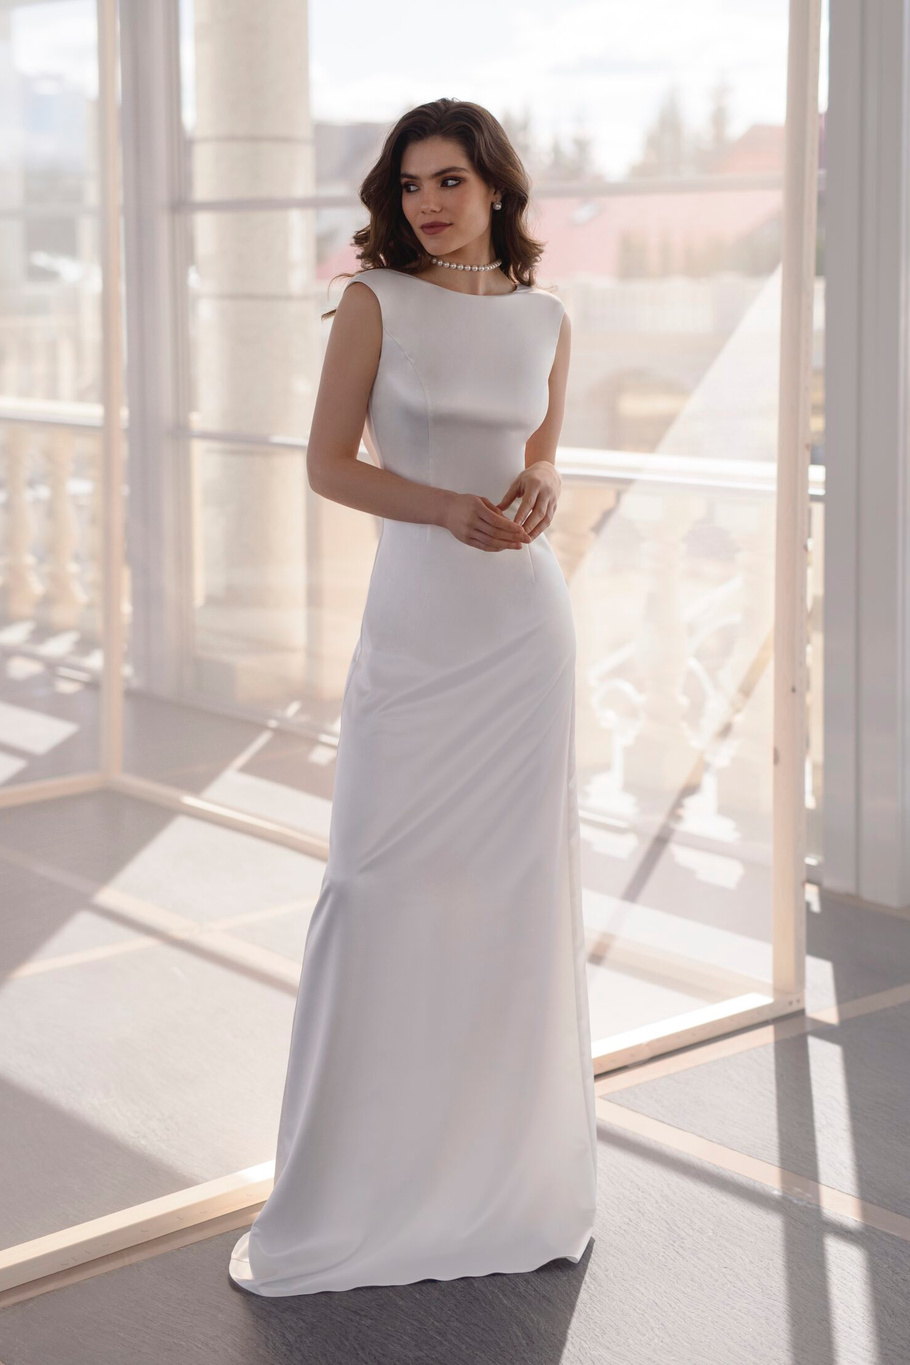 Купить свадебное платье «Ева» Эйв из коллекции 2021 года в салоне «Мэри Трюфель»